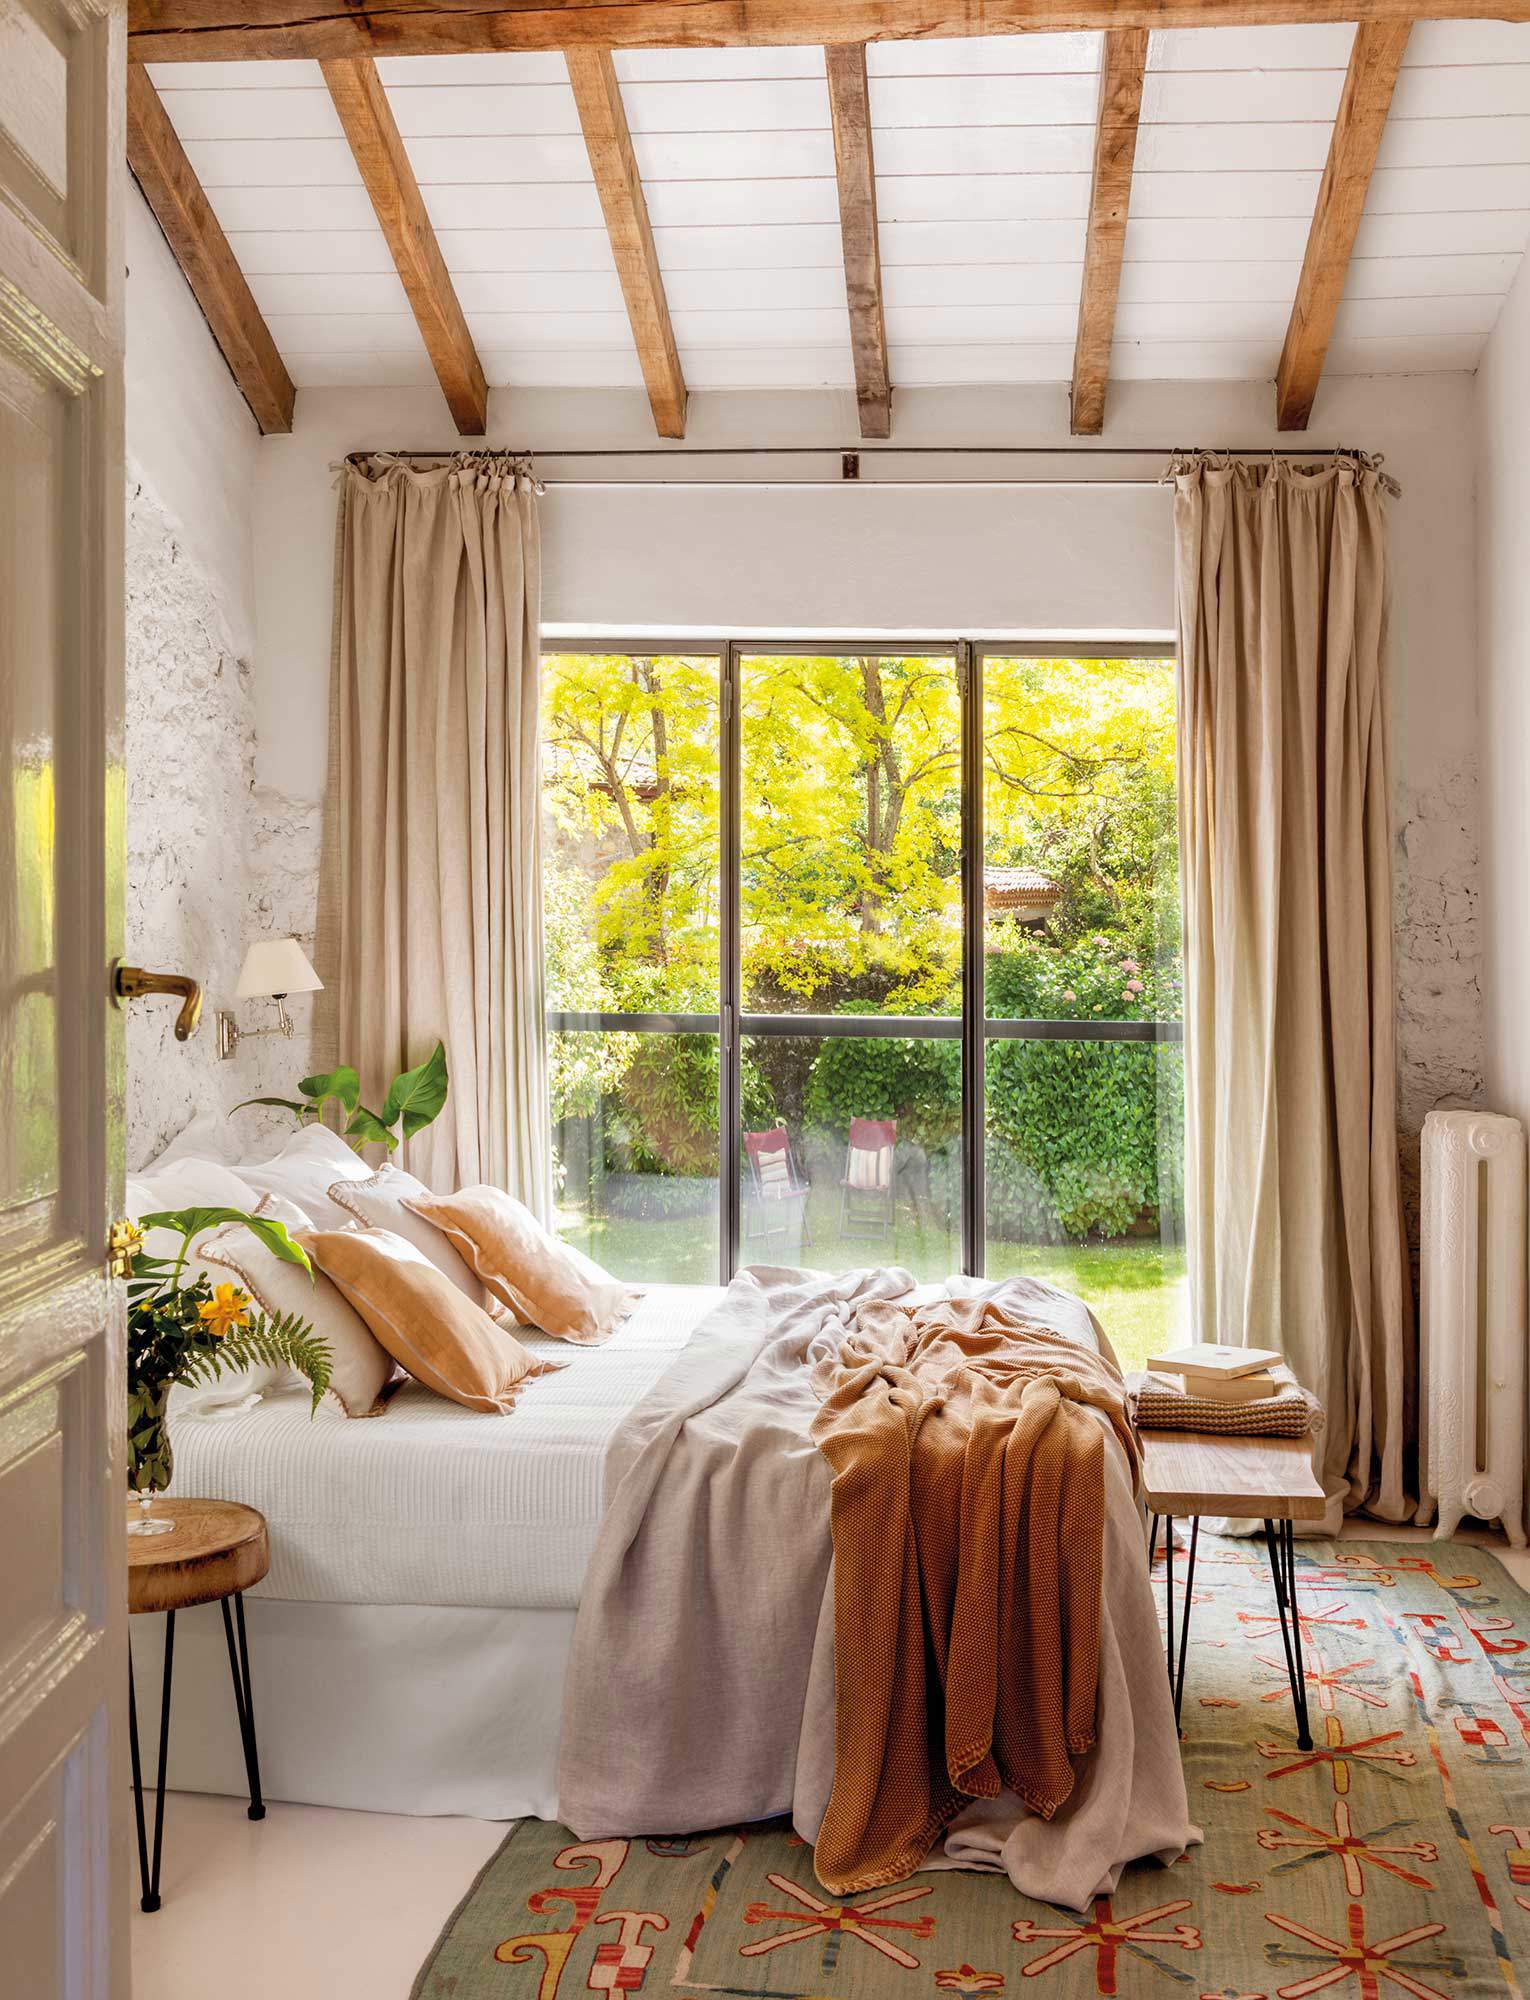 Dormitorio decorado en tonos naturales.